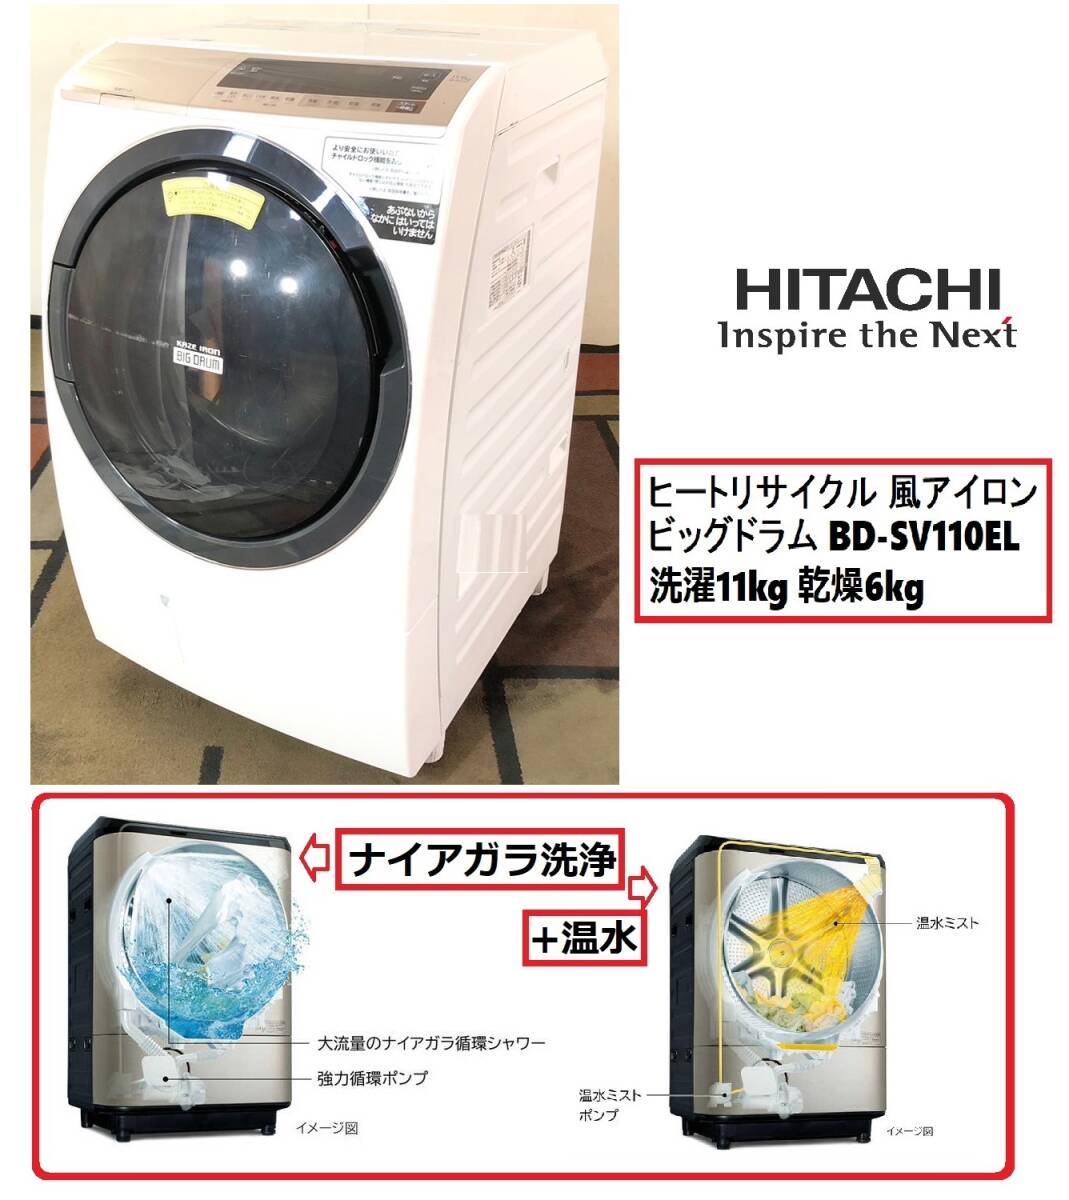 【日立】ドラム式洗濯乾燥機 HITACHI BD-SV110EL 洗濯11kg 乾燥6kg 左開きビッグドラム W63×H105×D71.5 ヒートリサイクル(C)BE3NM-2-N#24の画像1